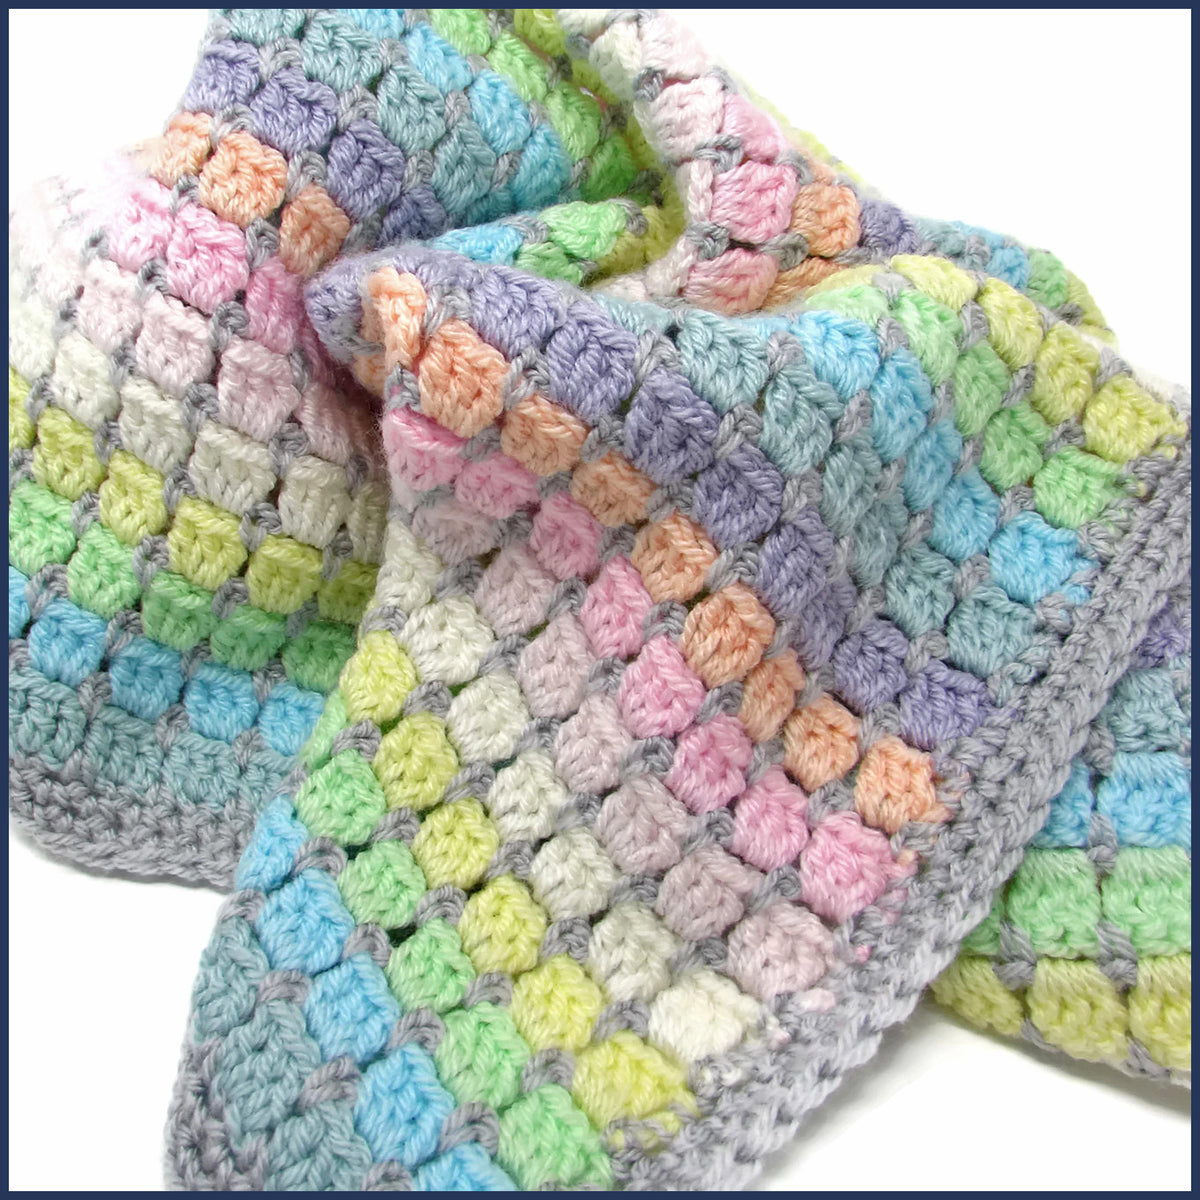 Rainbow Blanket Crochet Kit Ivf Baby Blanket Crochet Kit How to